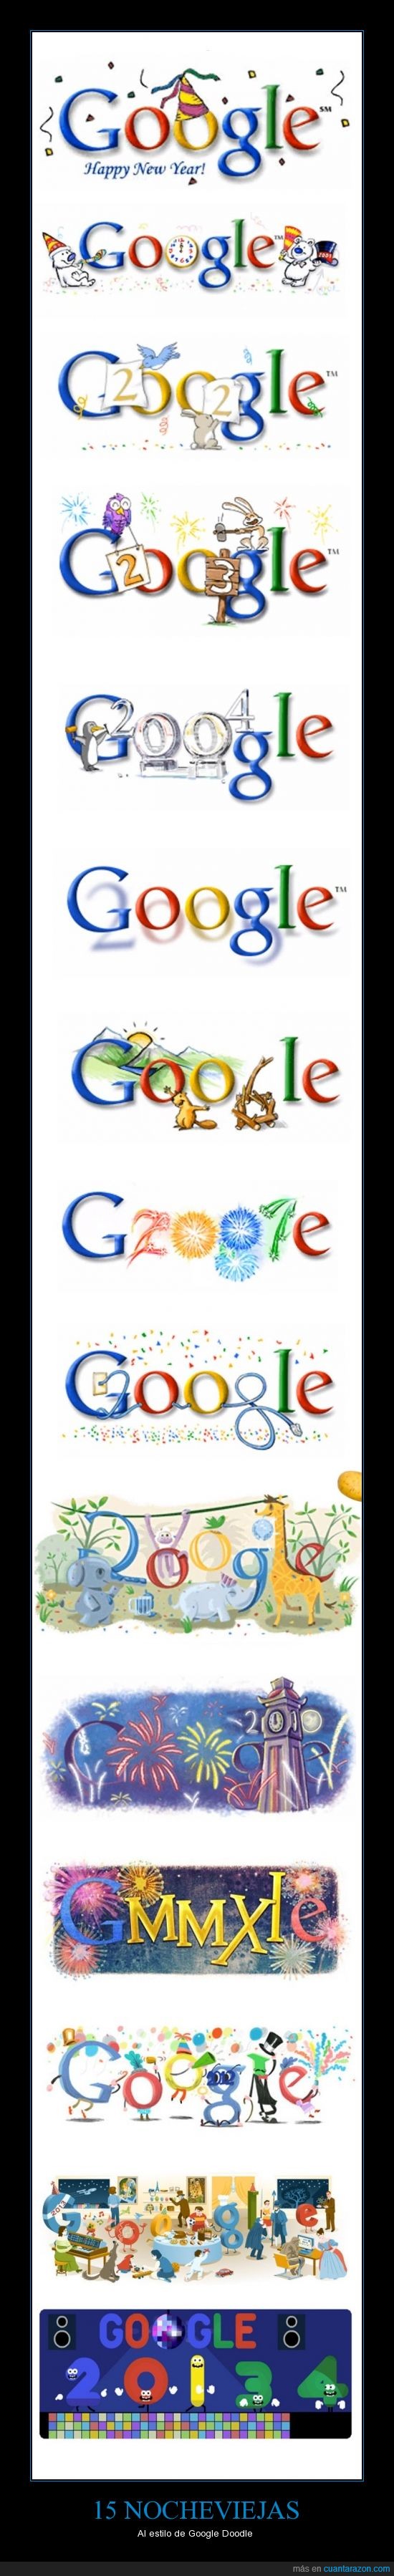 google,doodle,feliz año nuevo,nochevieja,15 años,1999-2014